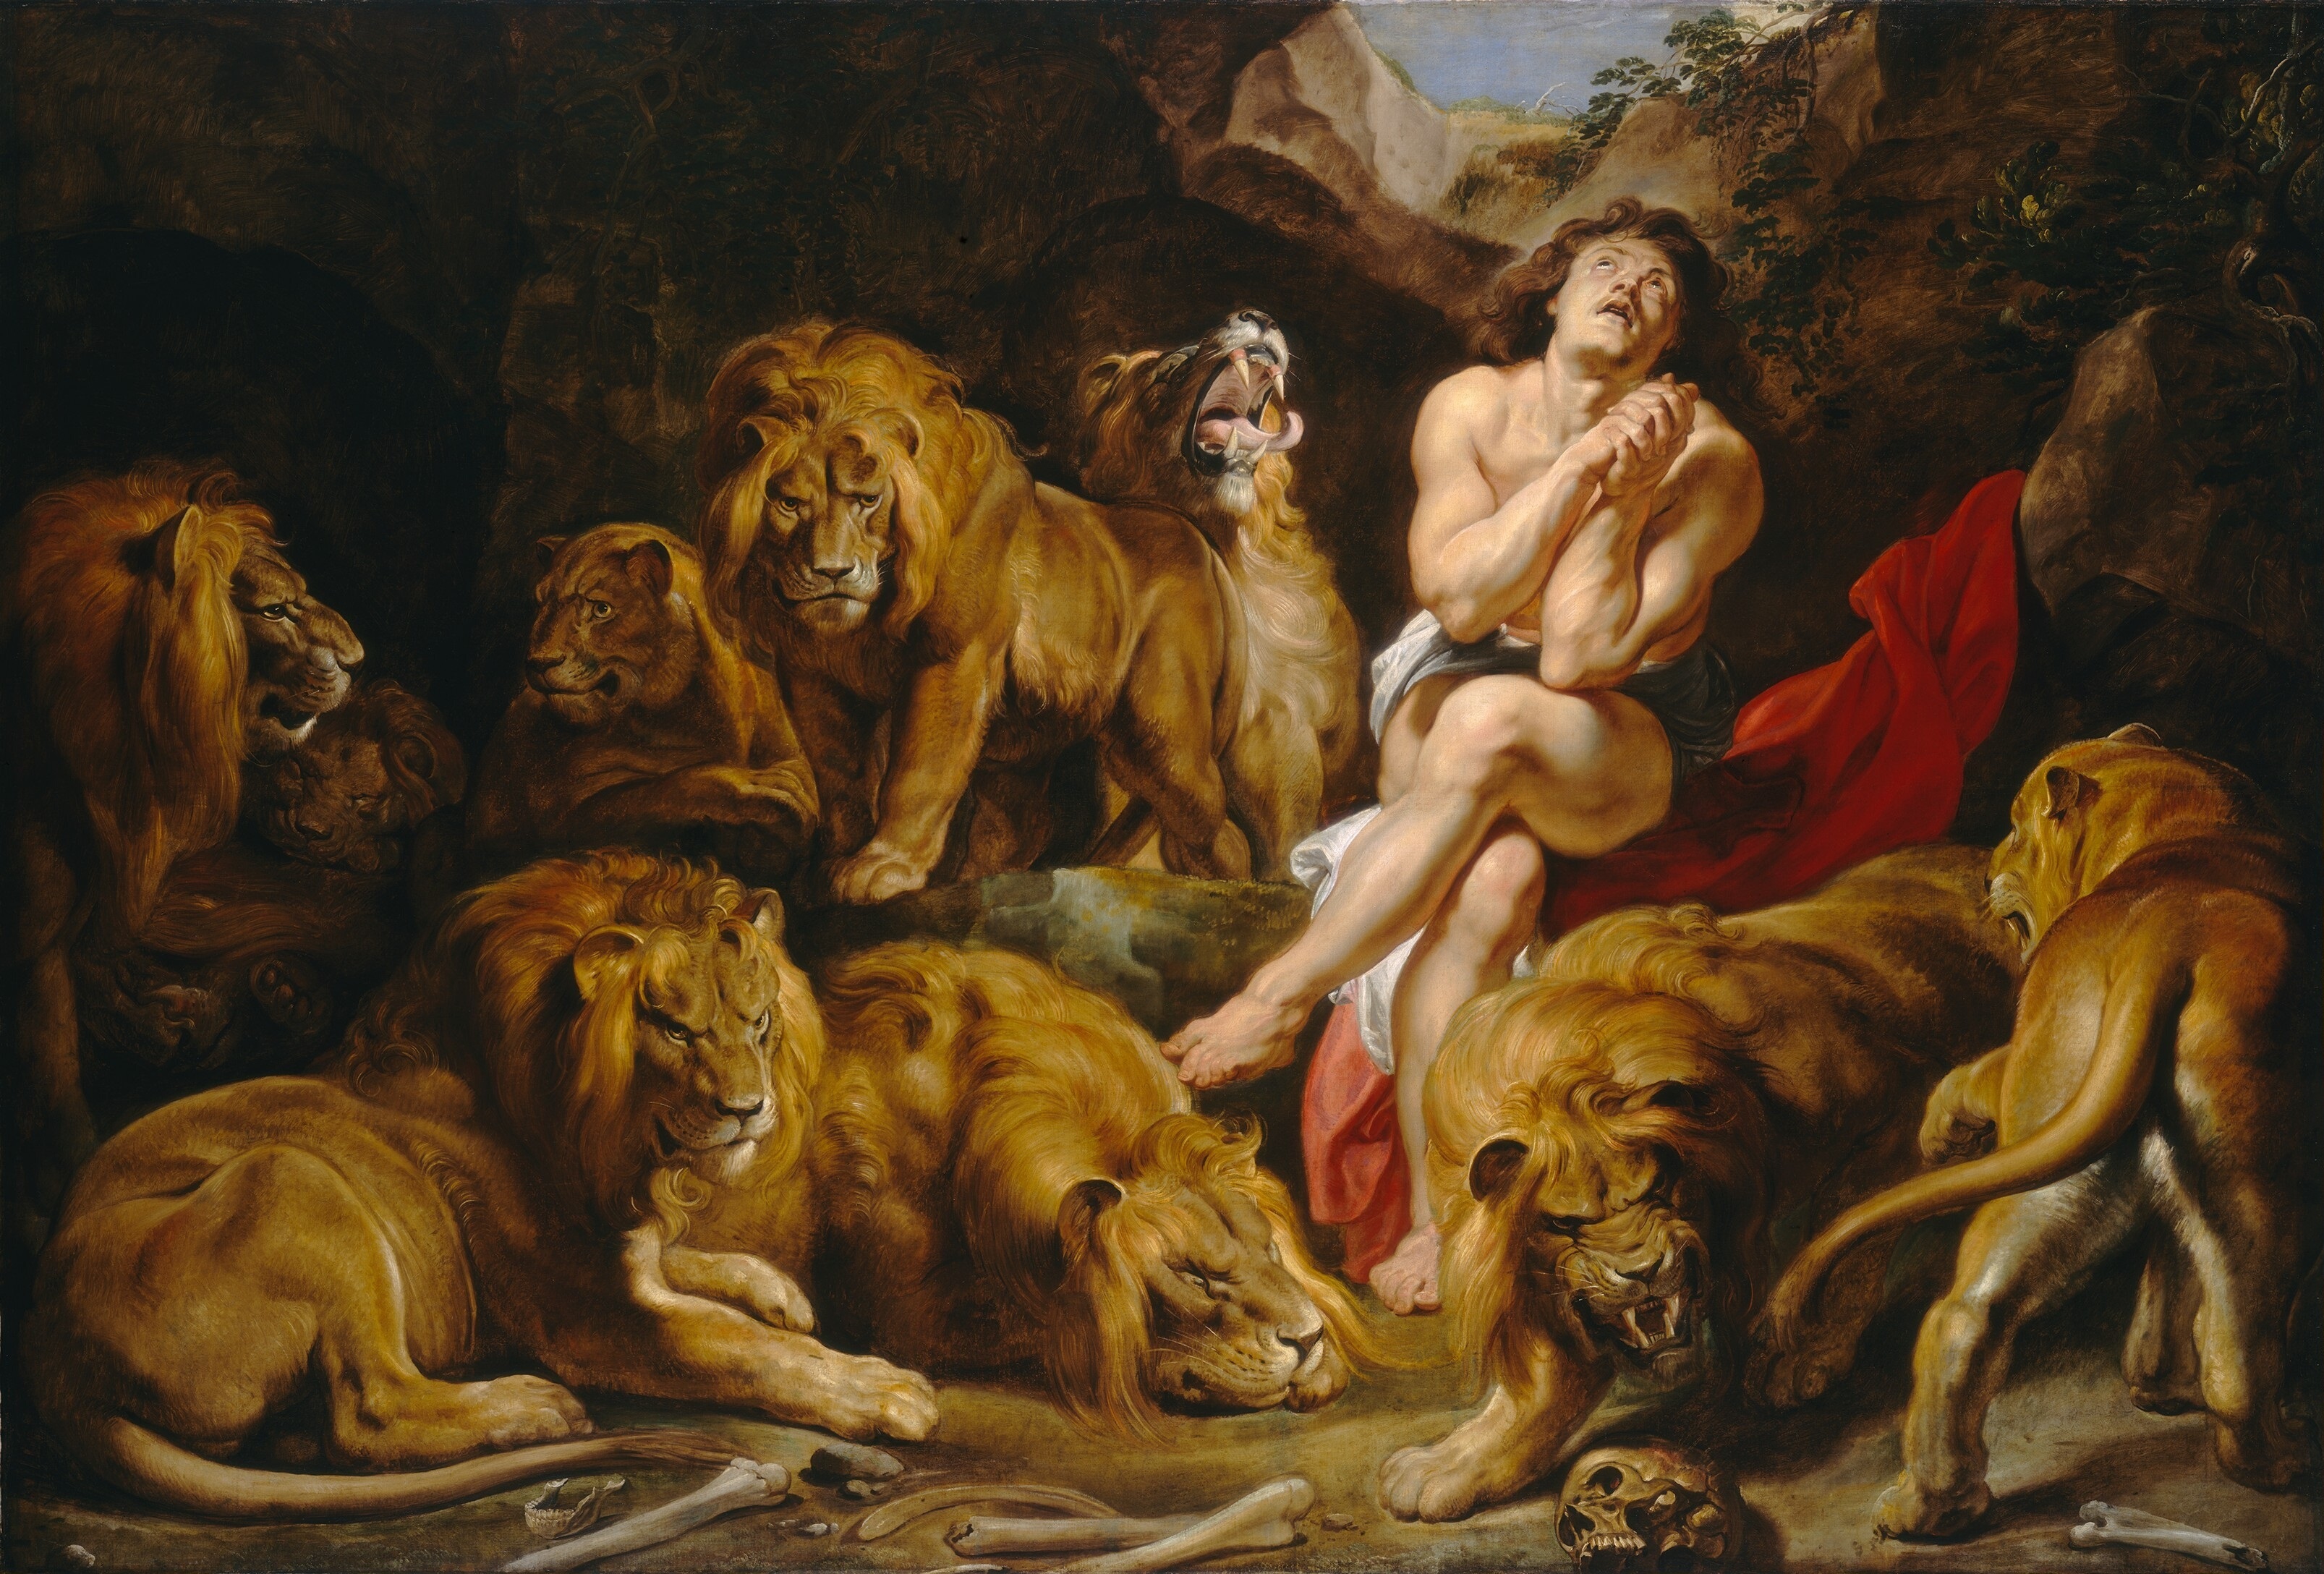 Daniel dans la Fosse aux Lions by Peter Paul Rubens - c. 1614/1616 - 224.2 x 330.5 cm 